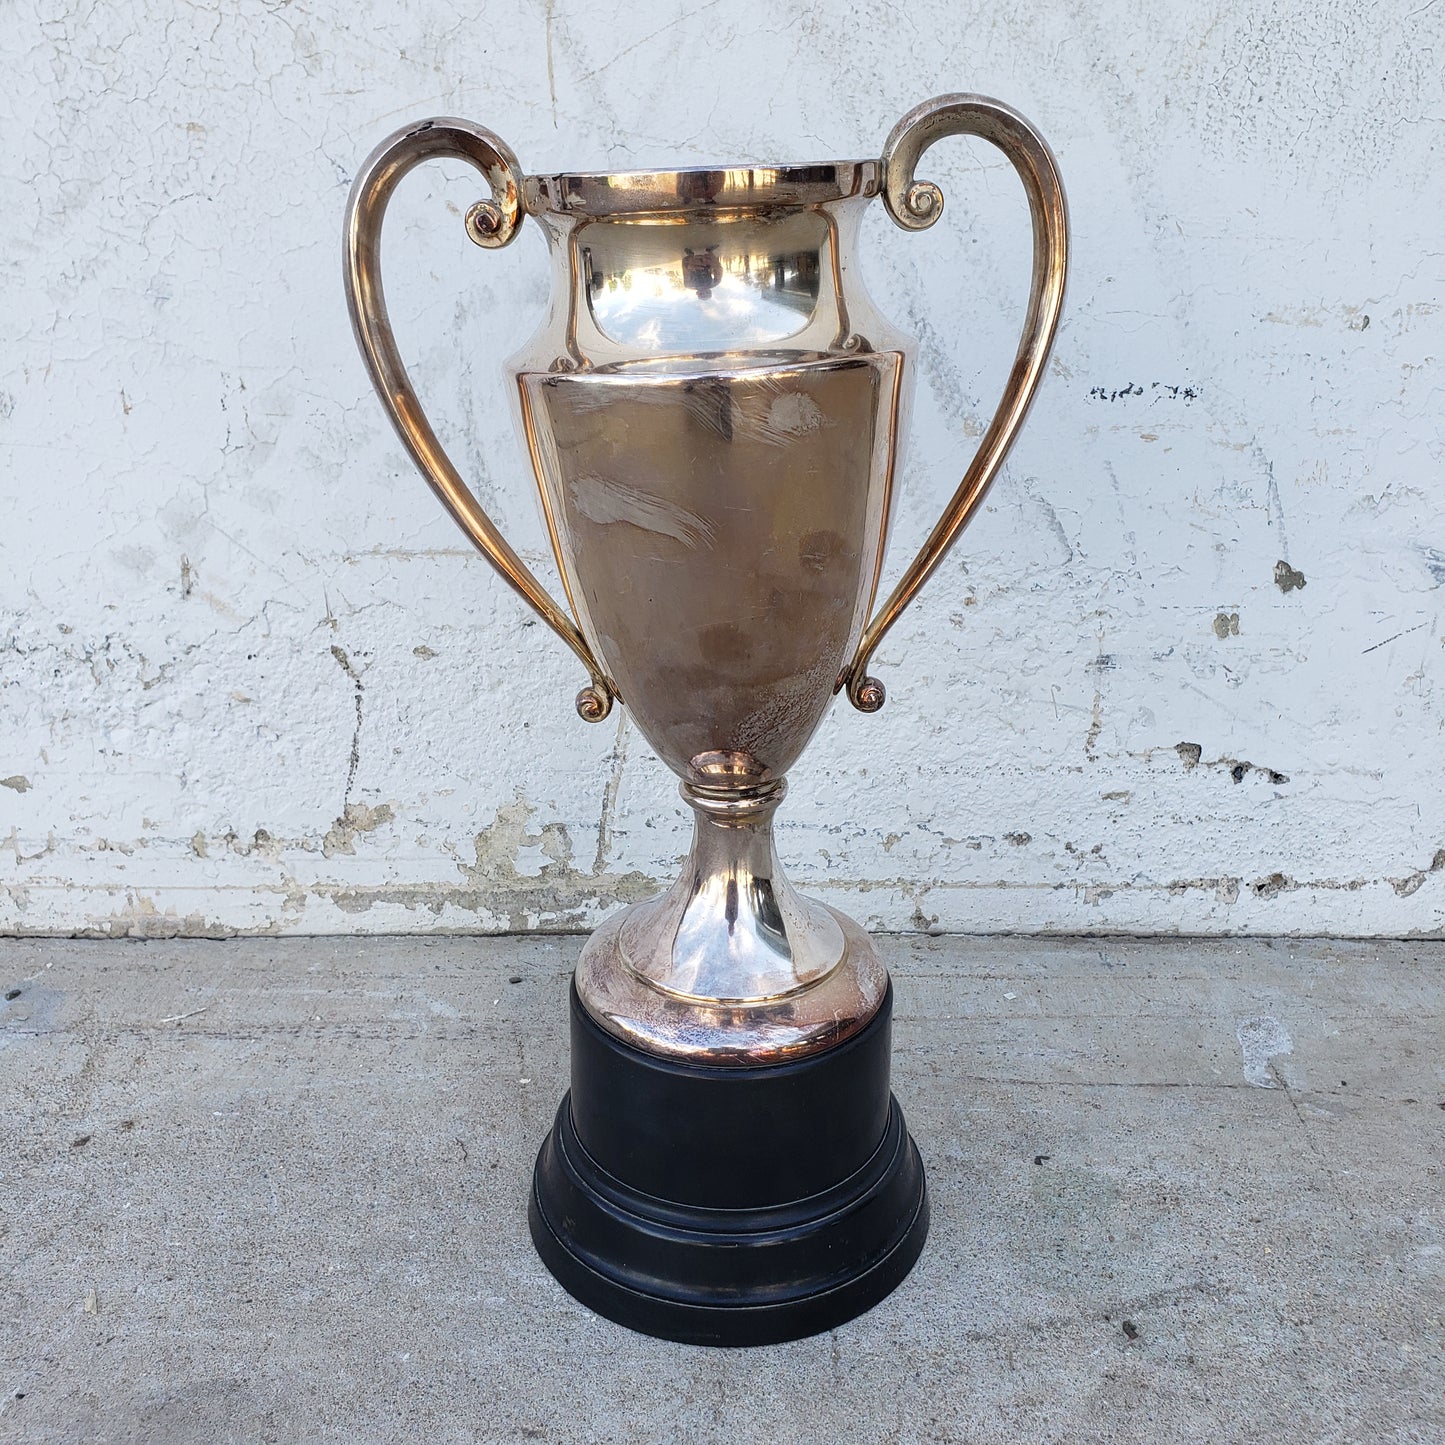 American Yacht Club Trophy